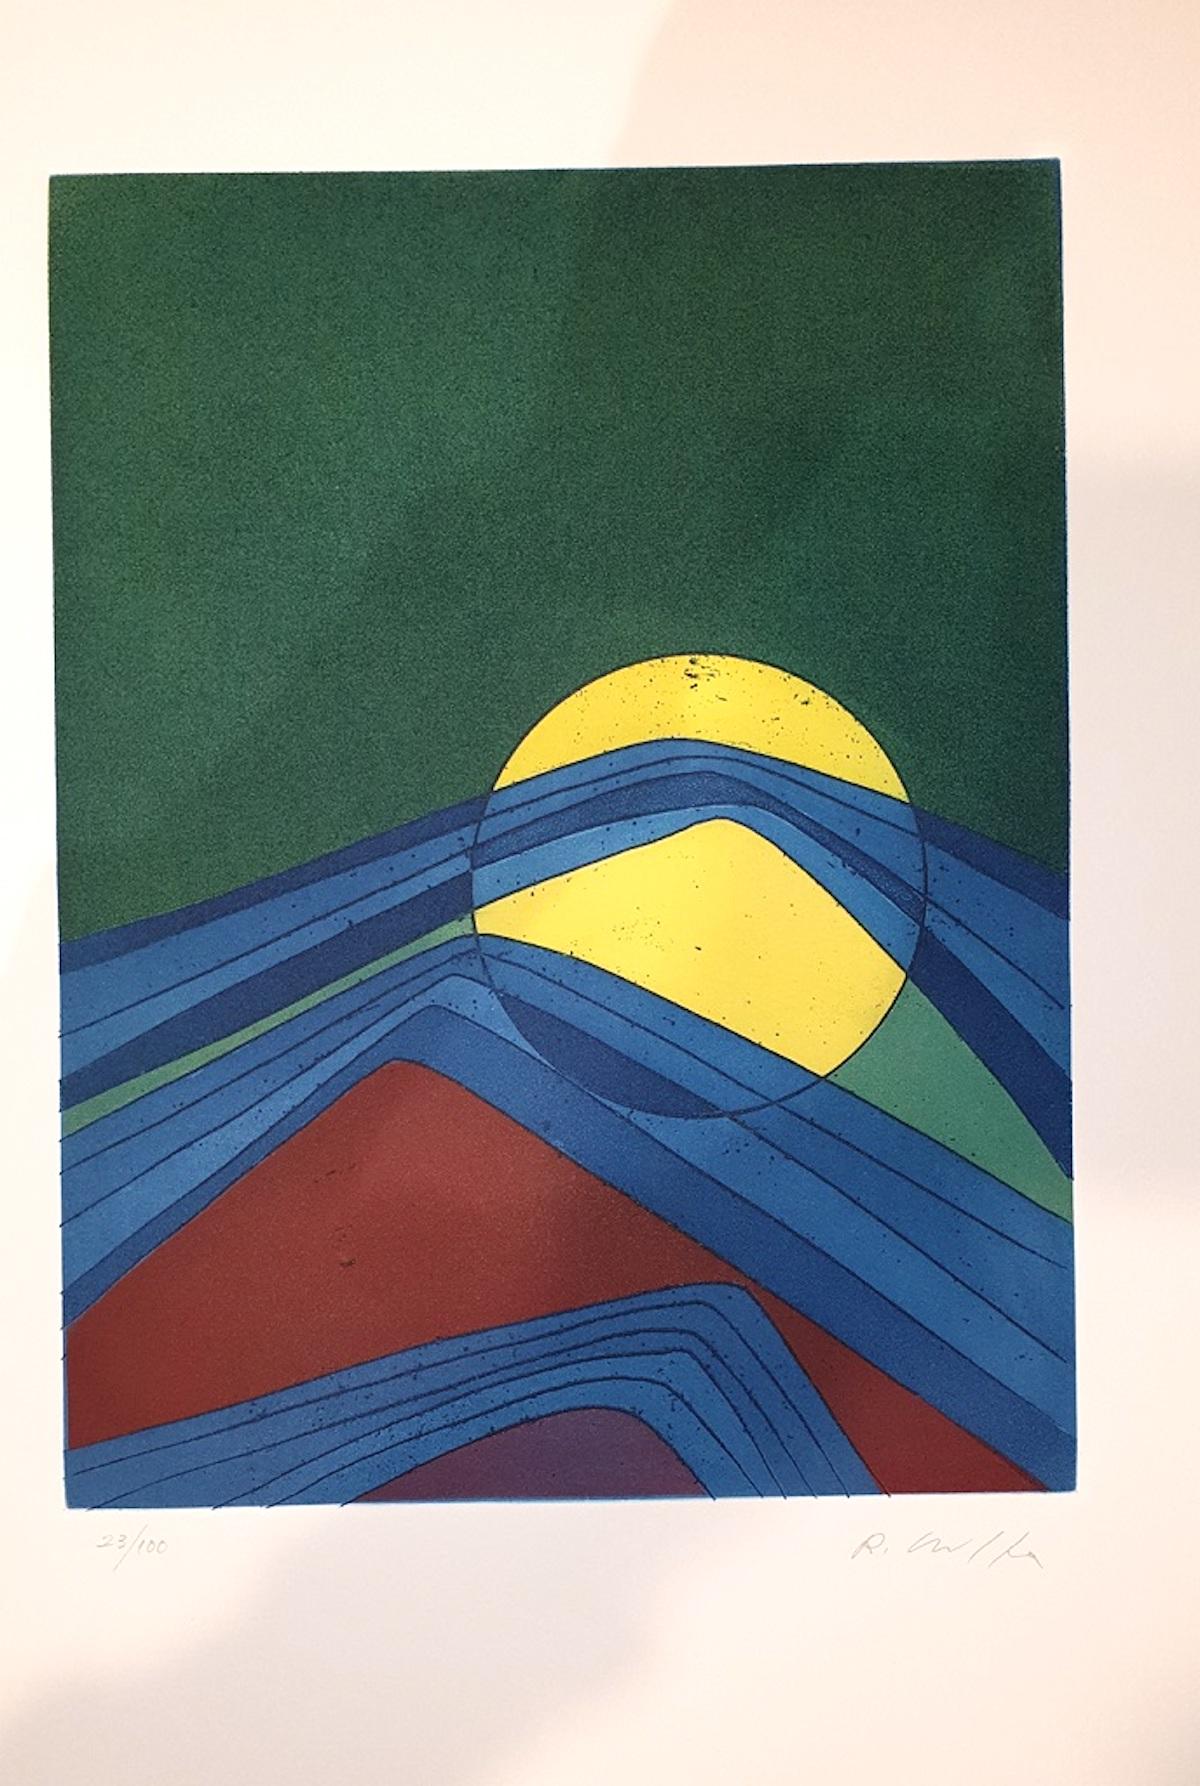 Assiette II de Suns/Landscapes - Eau-forte de R. Crippa - 1971/72